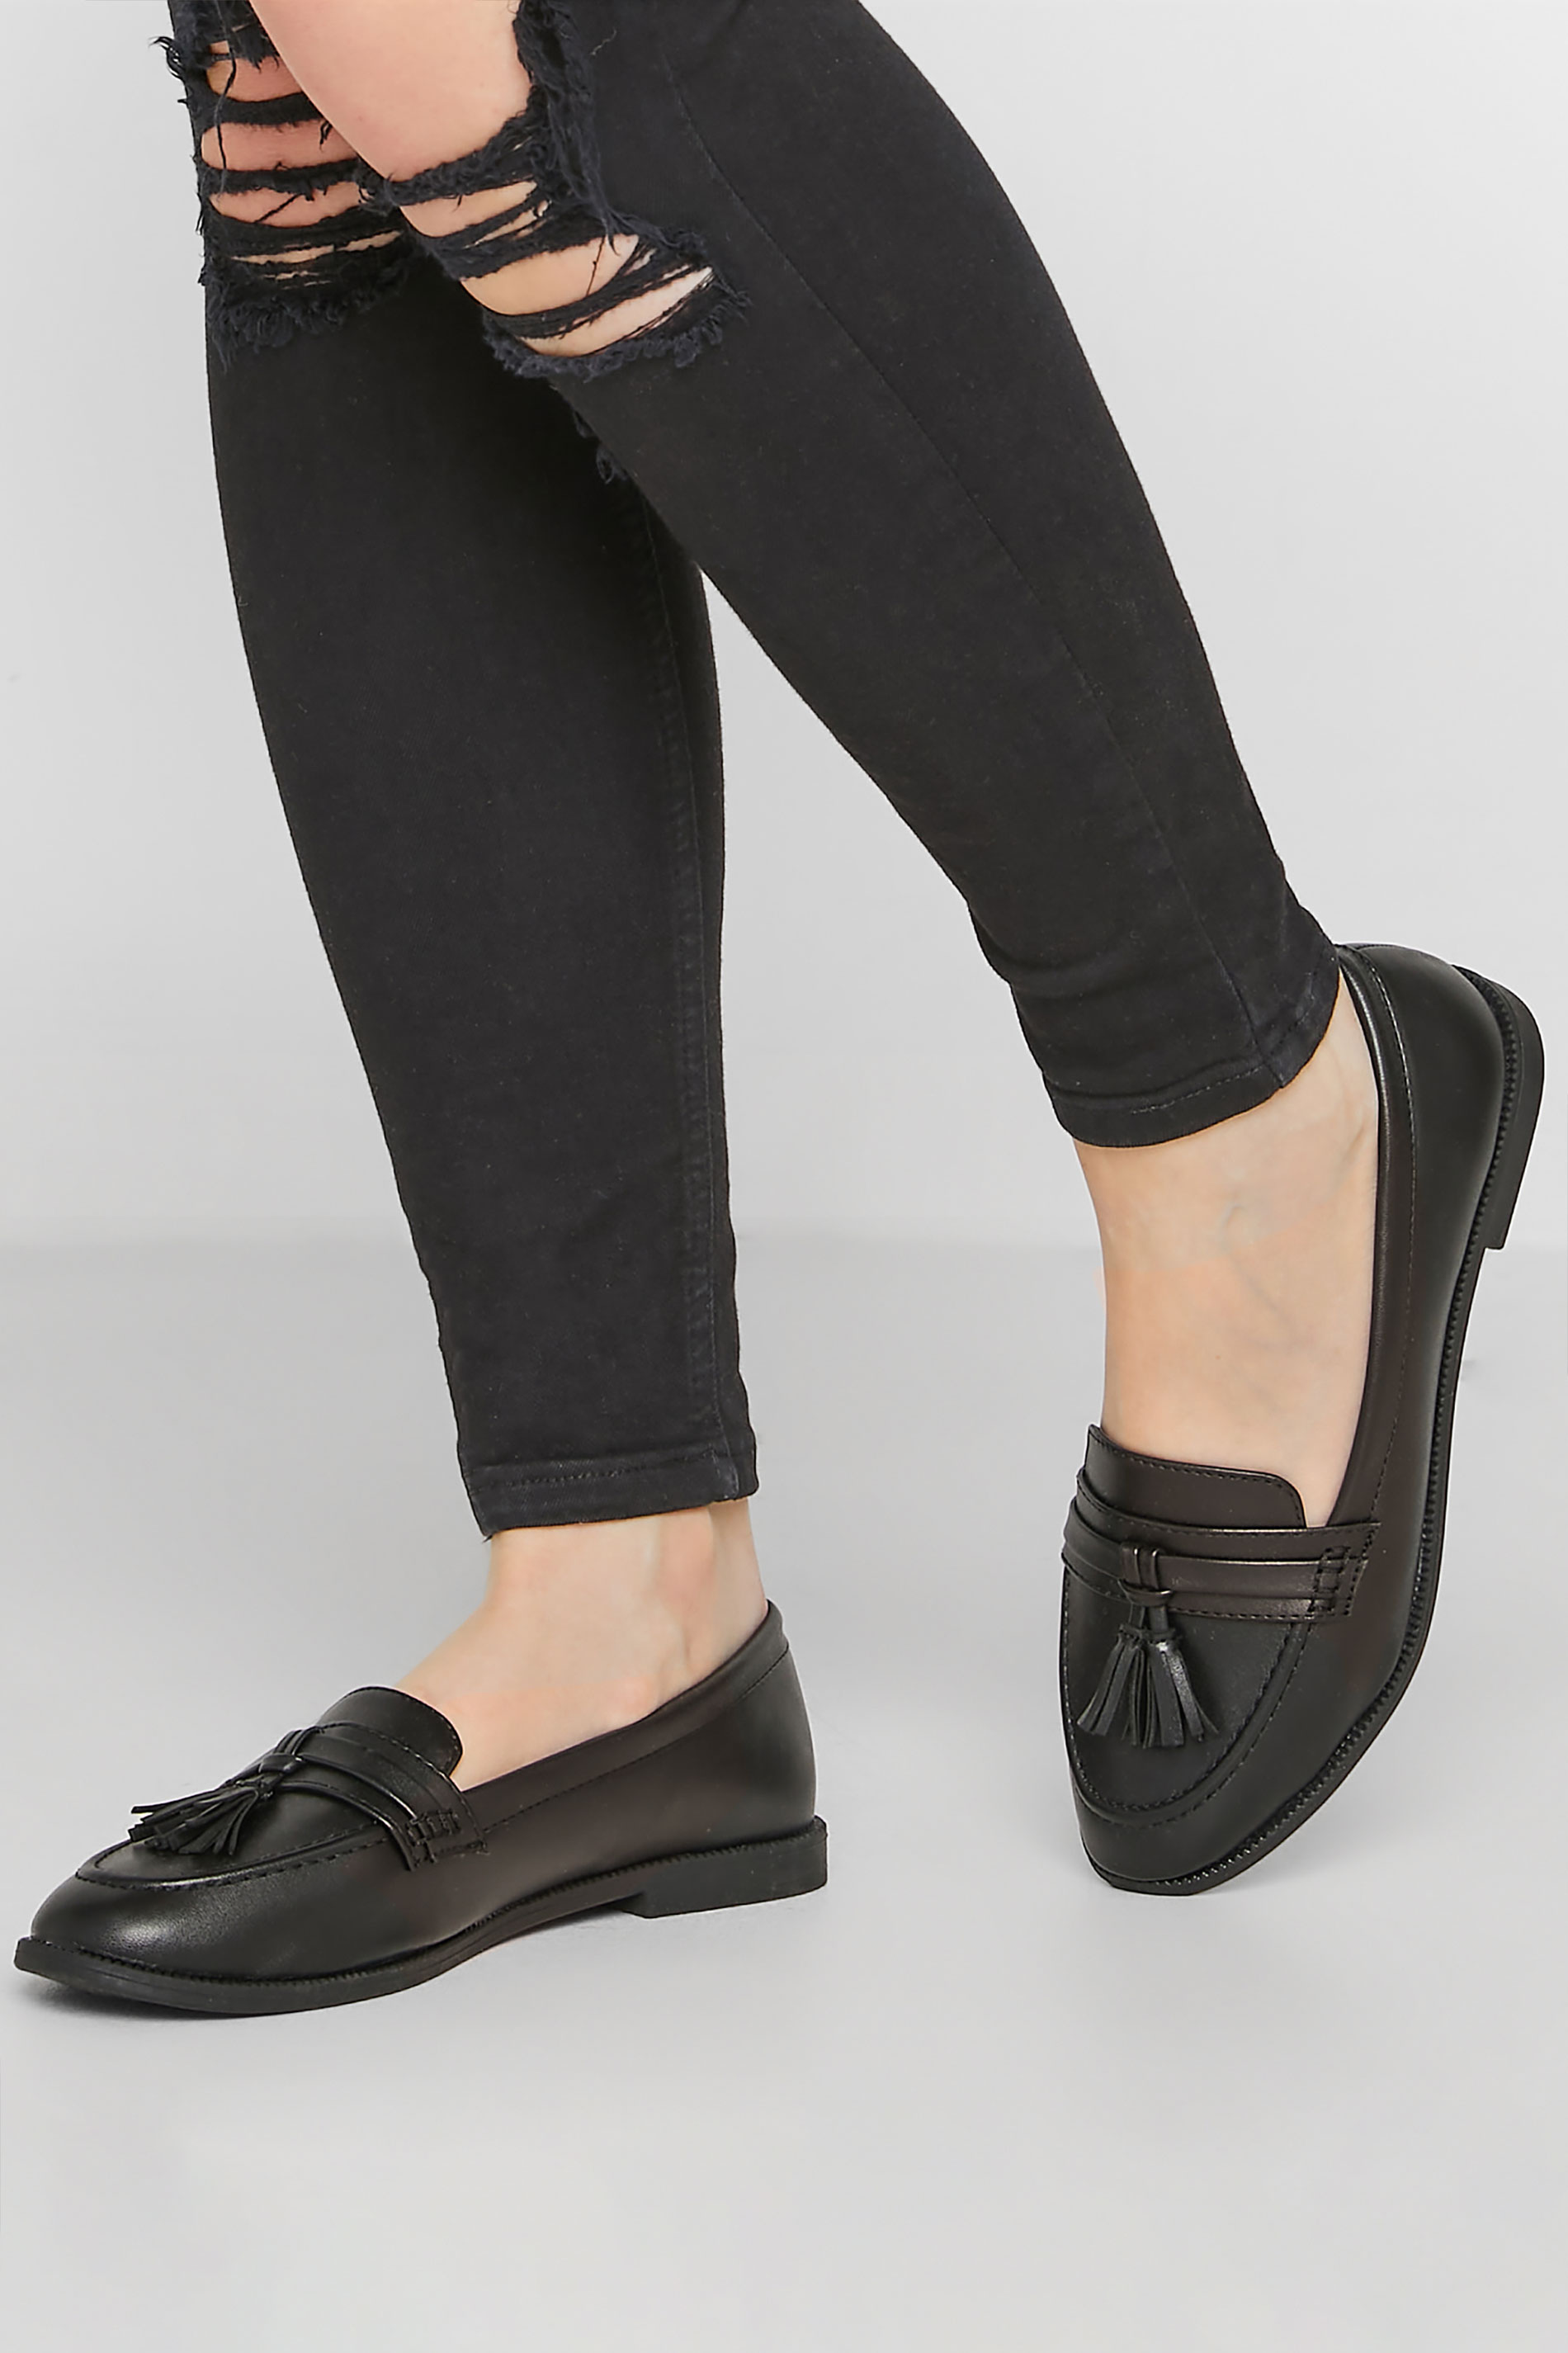 Black Faux Leather Tassel Loafers In Standard D Fit | PixieGirl 1